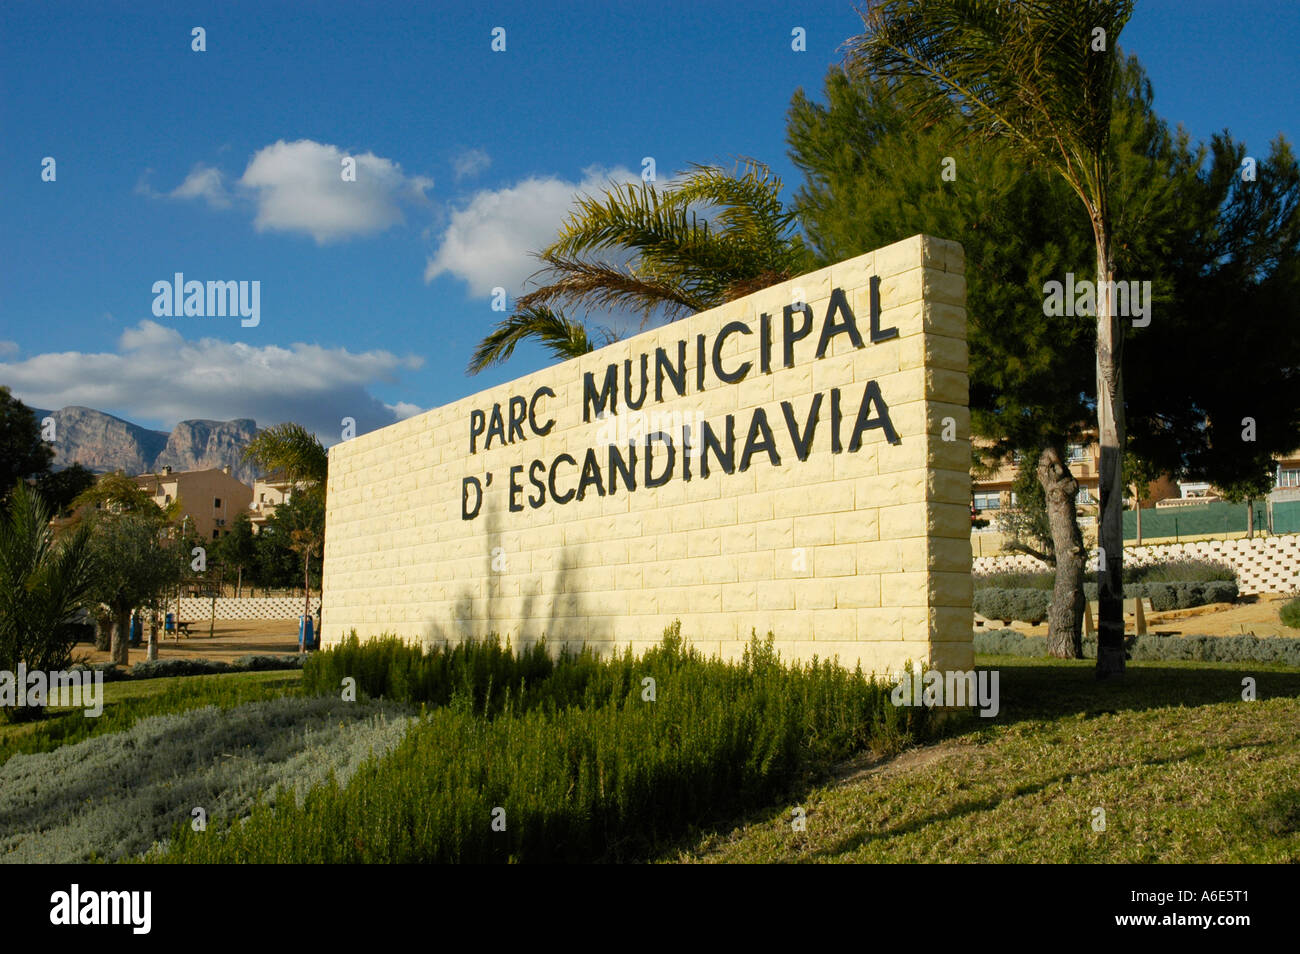 Sign in a public park, park municipal de escandinavia, Altea, Costa Blanca,  Spain Stock Photo - Alamy